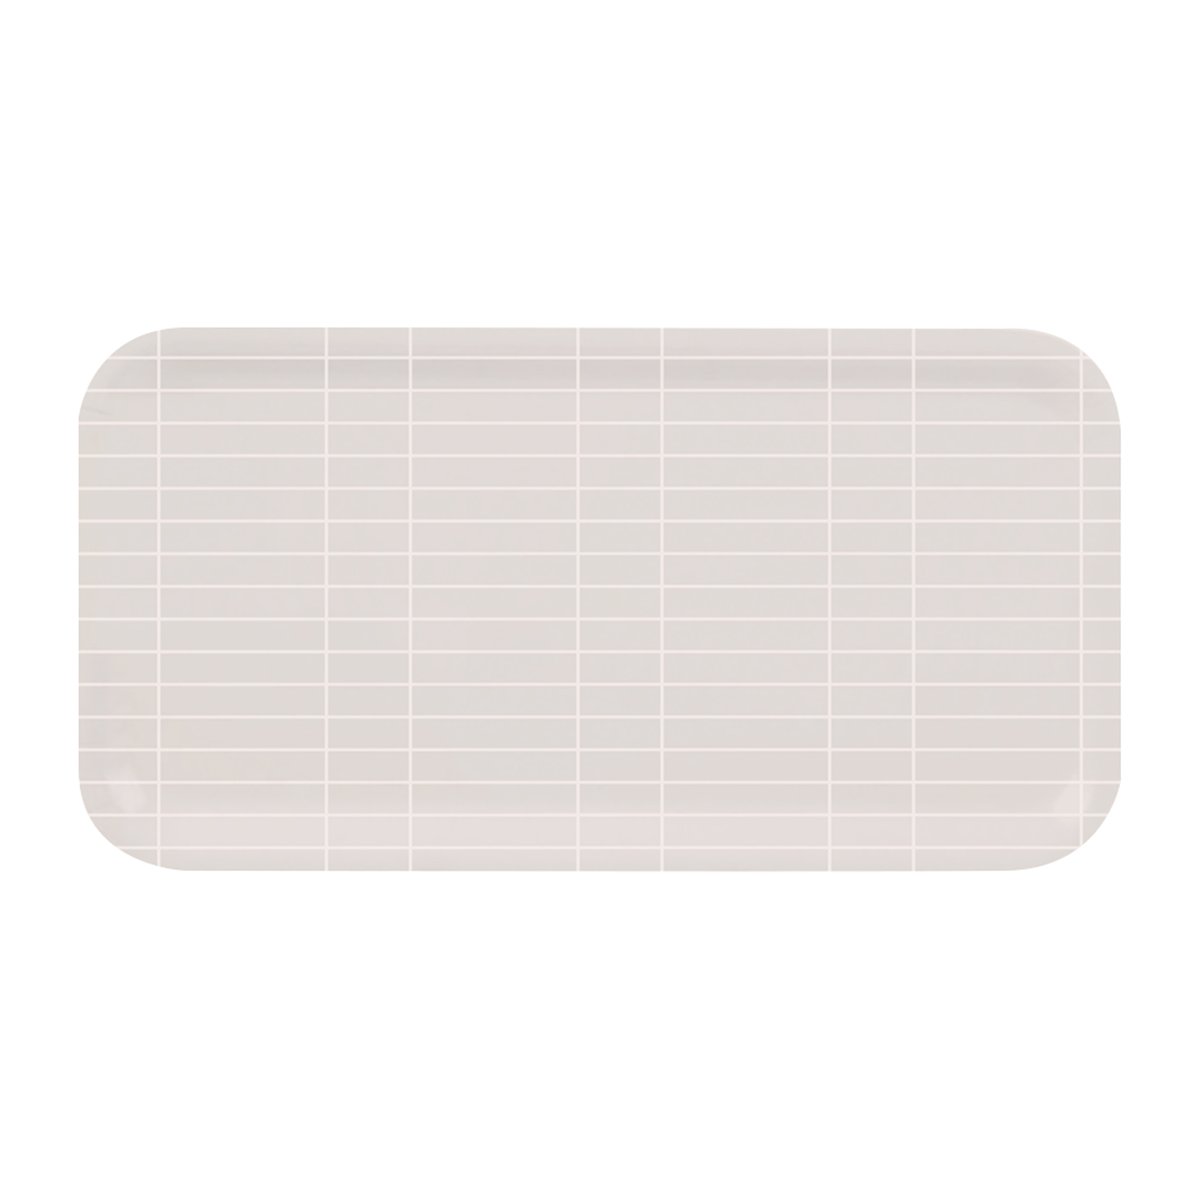 muurla plateau checks & stripes 22x43 cm beige-blanc